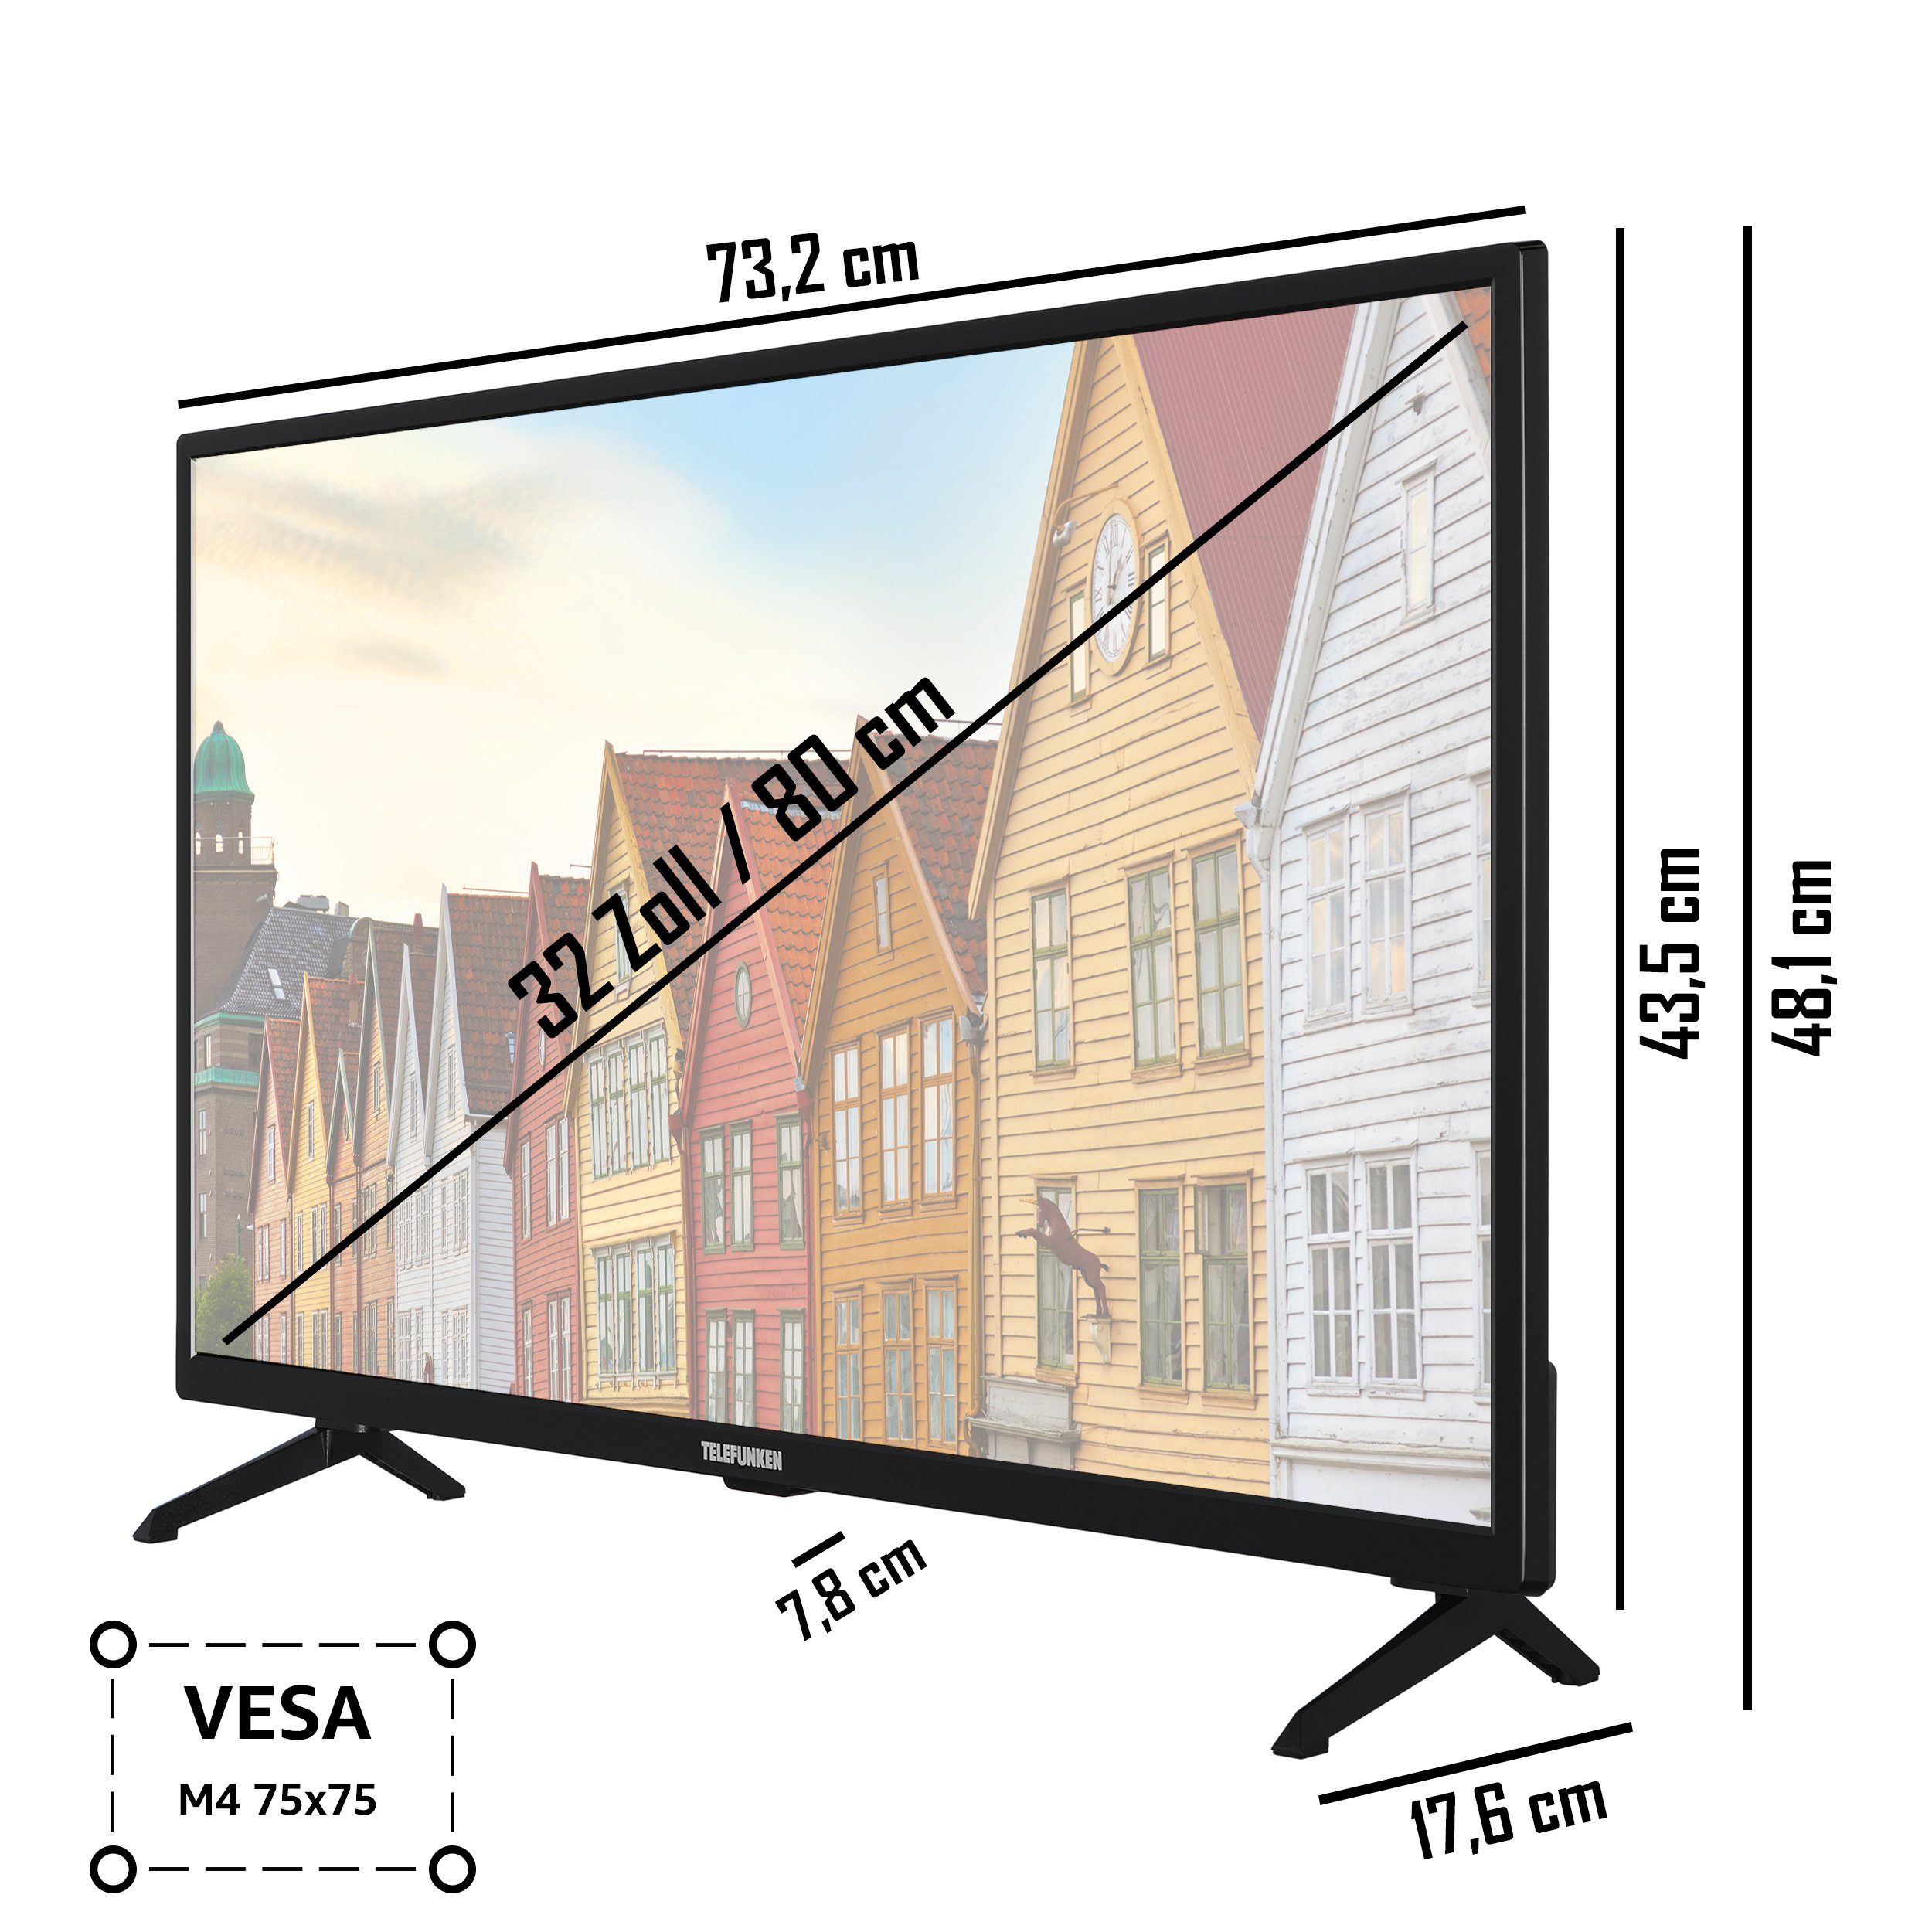 Telefunken XF32SN550SD LCD-LED Fernseher cm/32 HD+ Triple-Tuner 6 HDR, Zoll, gratis) Full - HD, Smart TV, (80 Monate